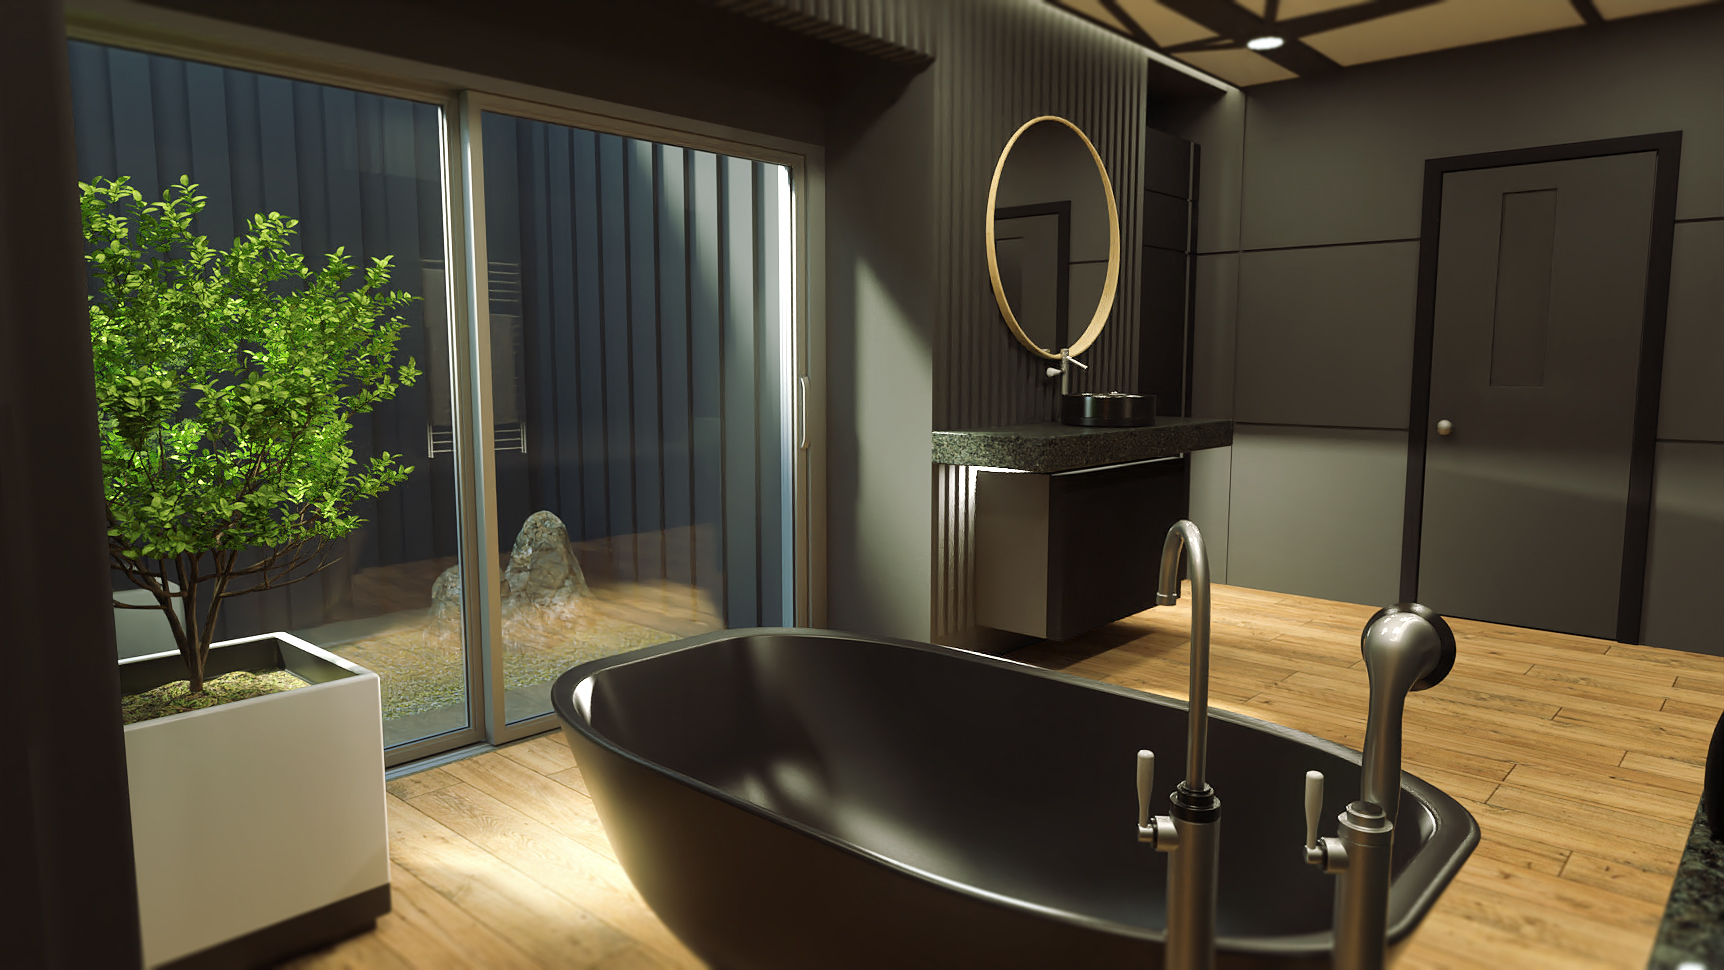 Scandinavian Bathroom by: kubramatic, 3D Models by Daz 3D